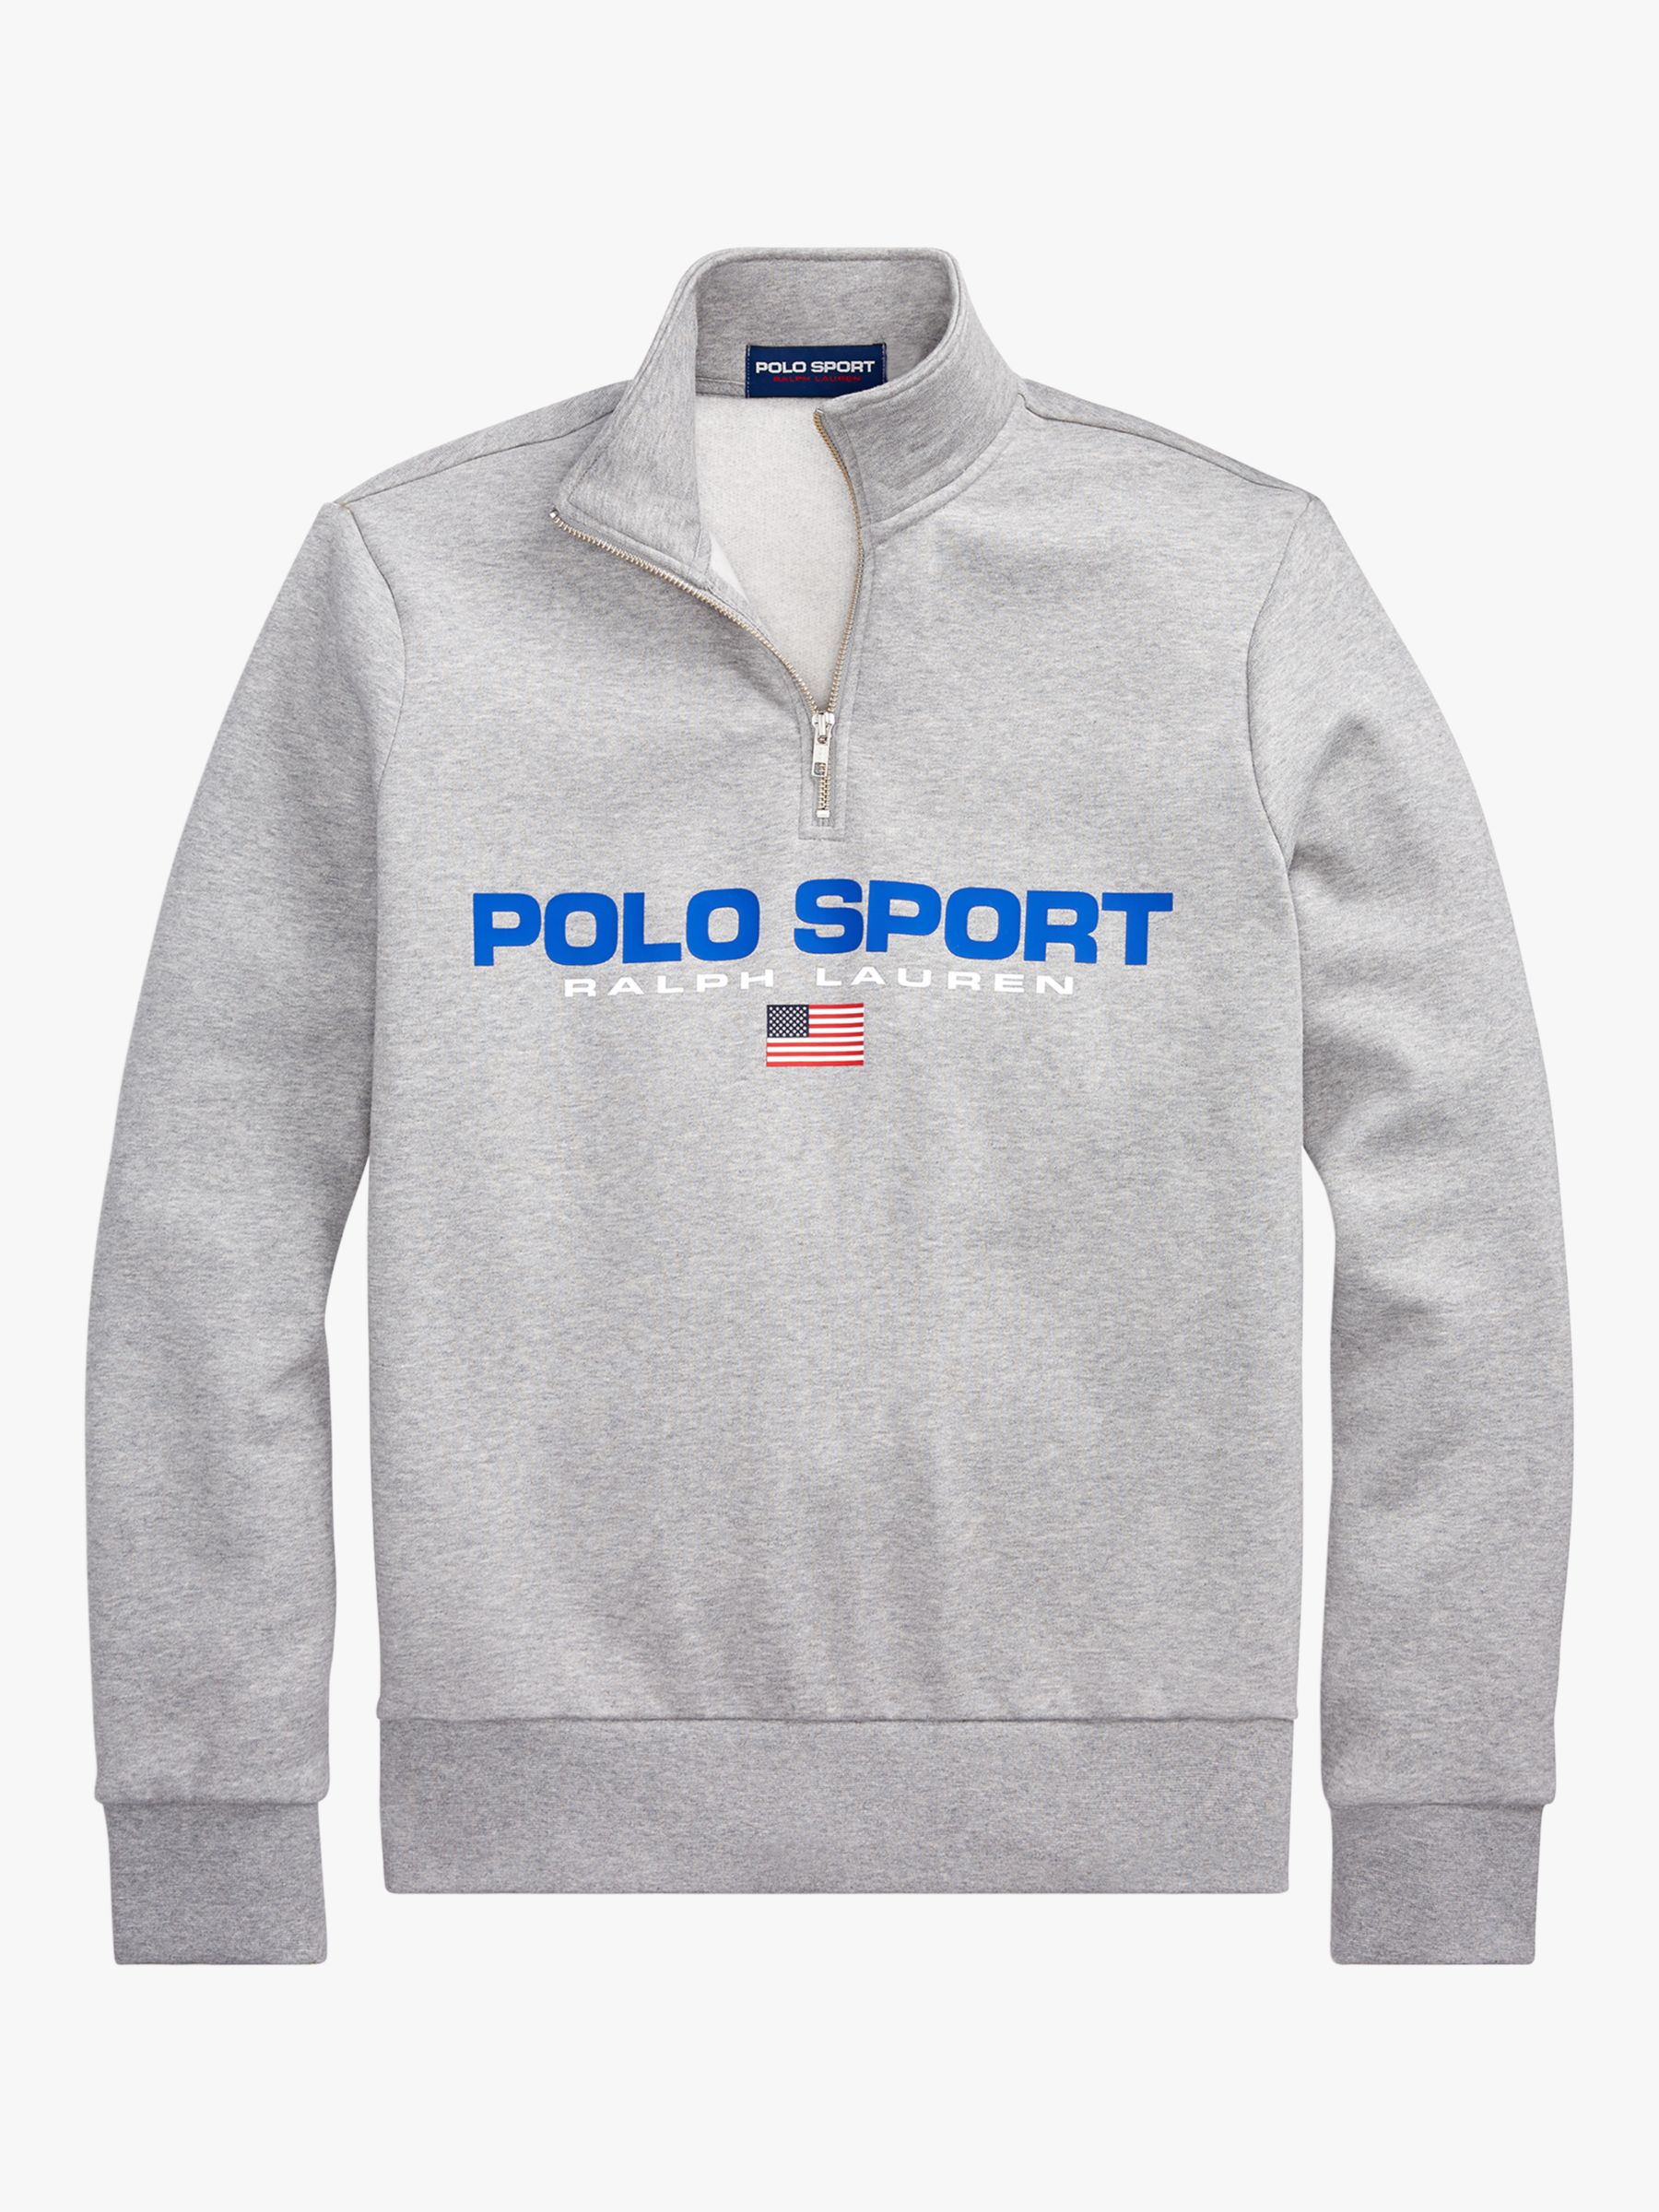 Polo Ralph Lauren Polo Sport Half Zip 